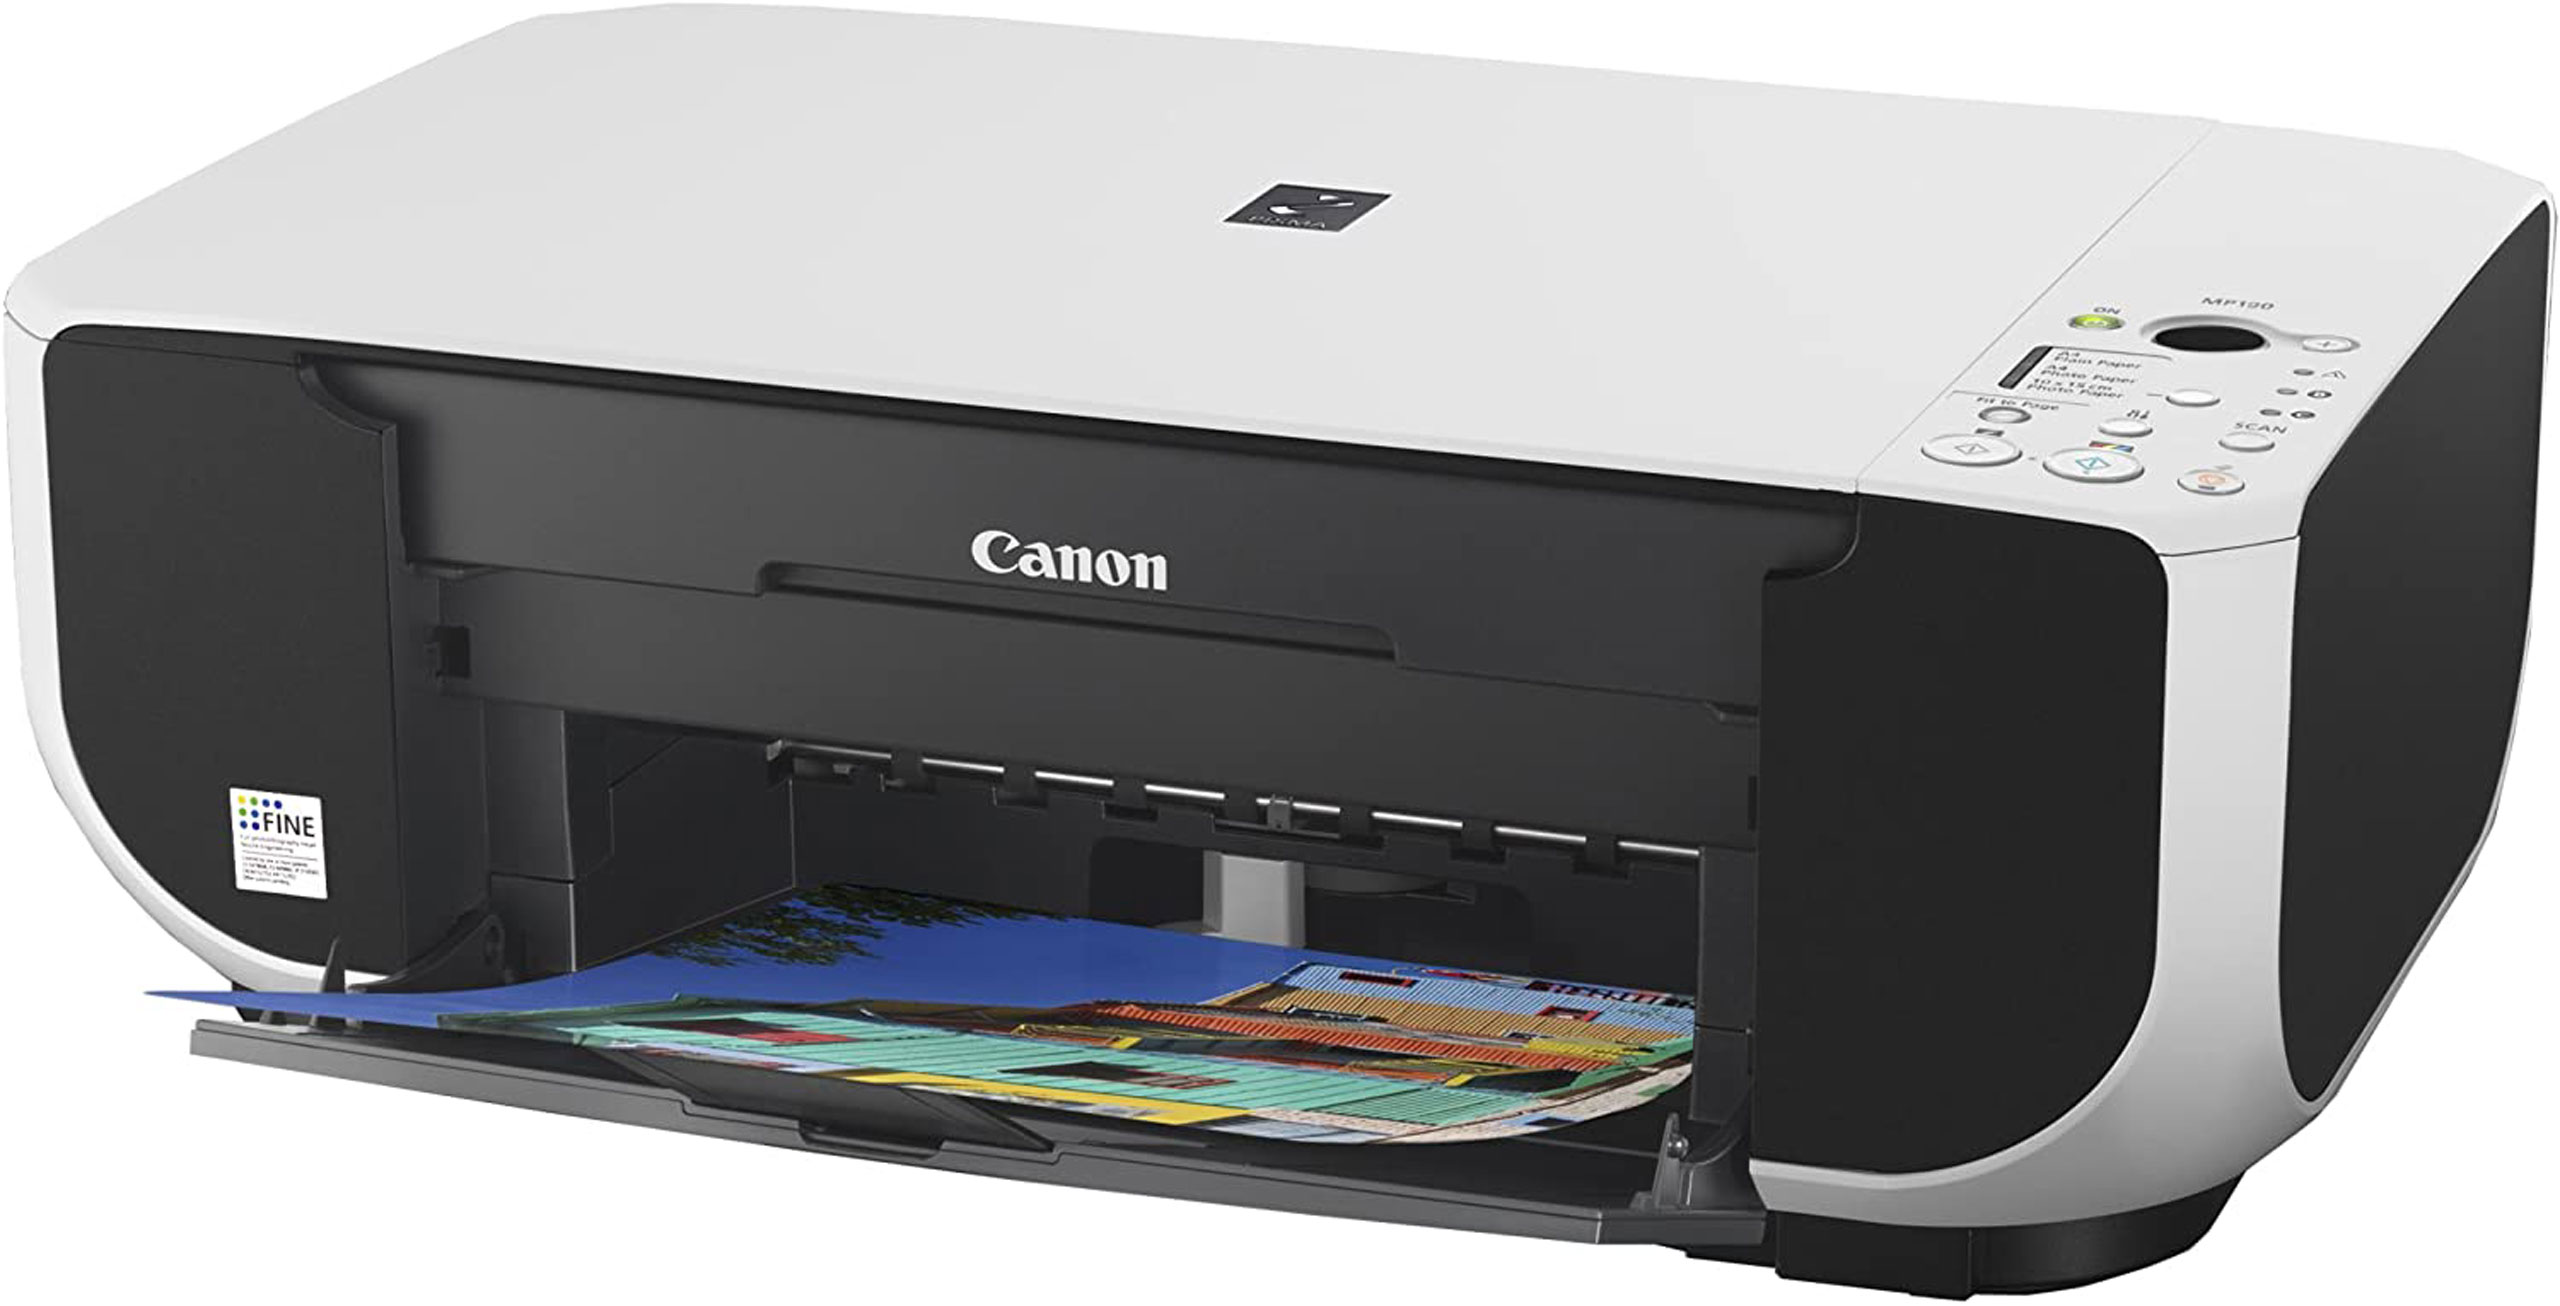 Купить принтер в м видео. Принтер Canon mp190. Принтер Canon PIXMA mg3640. МФУ струйный Canon mp190. Принтер Кэнон пиксма 190.